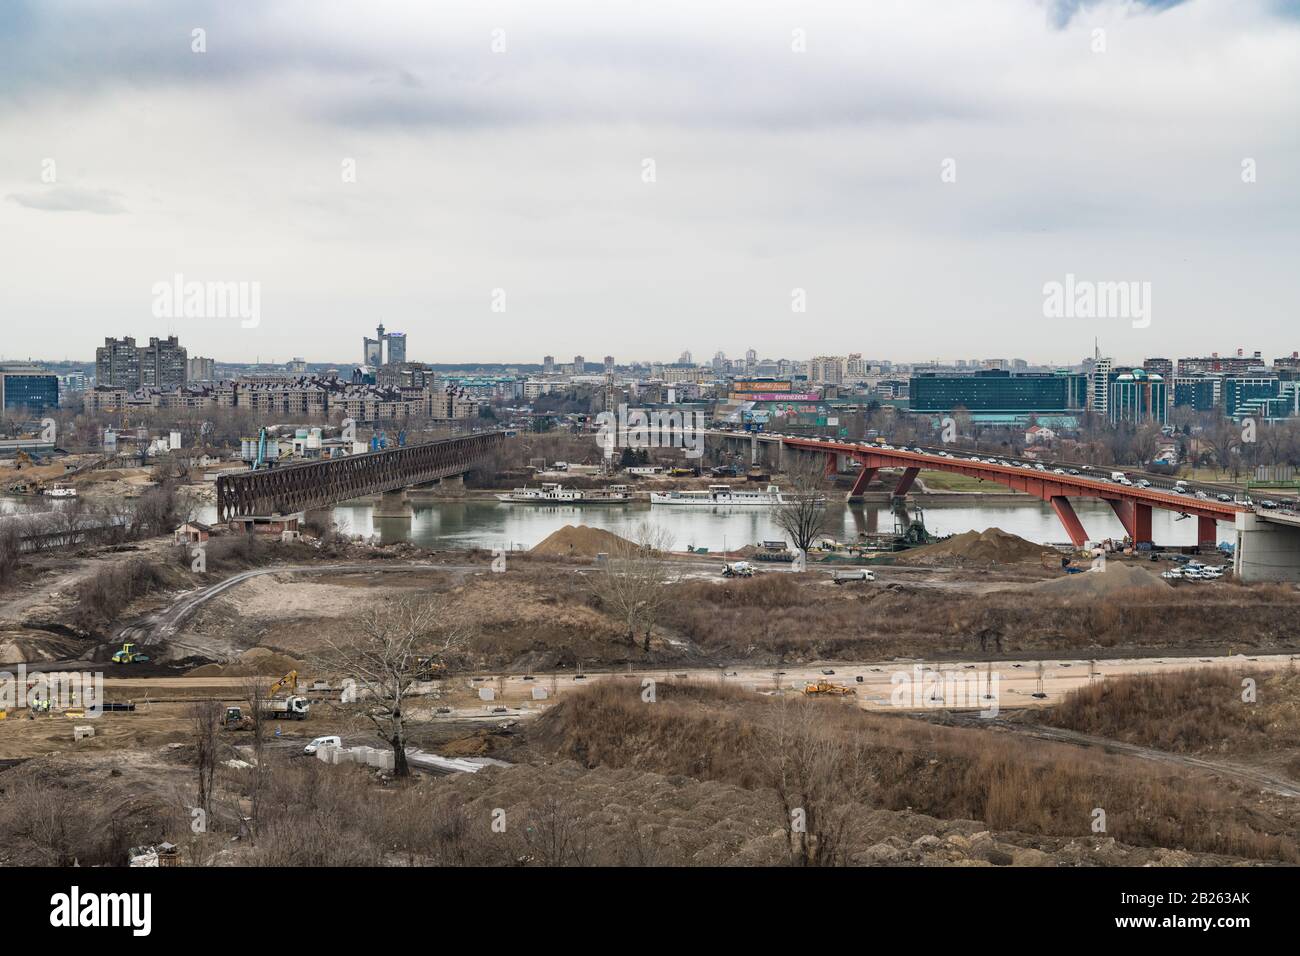 Die Uferpromenade von Belgrad, Serbien, errichtet Gebäude am Ufer des Flusses Sava, in der Nähe der alten Eisenbahnbrücke, die zerstört wird. Stockfoto